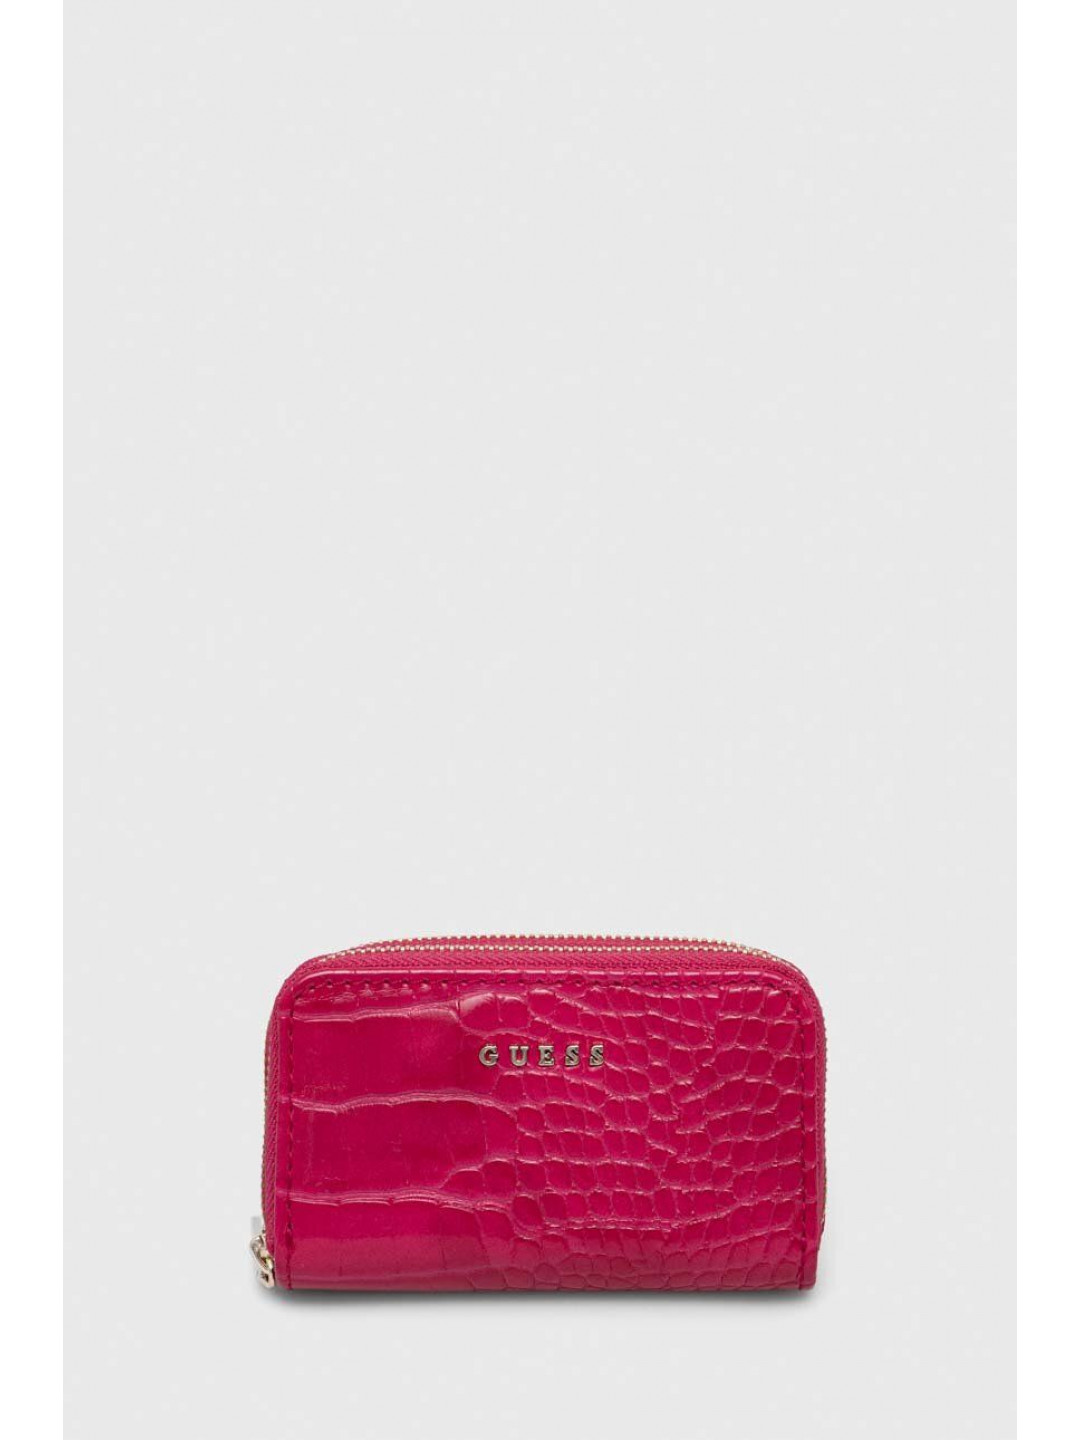 Peněženka Guess růžová barva PW7448 P4211